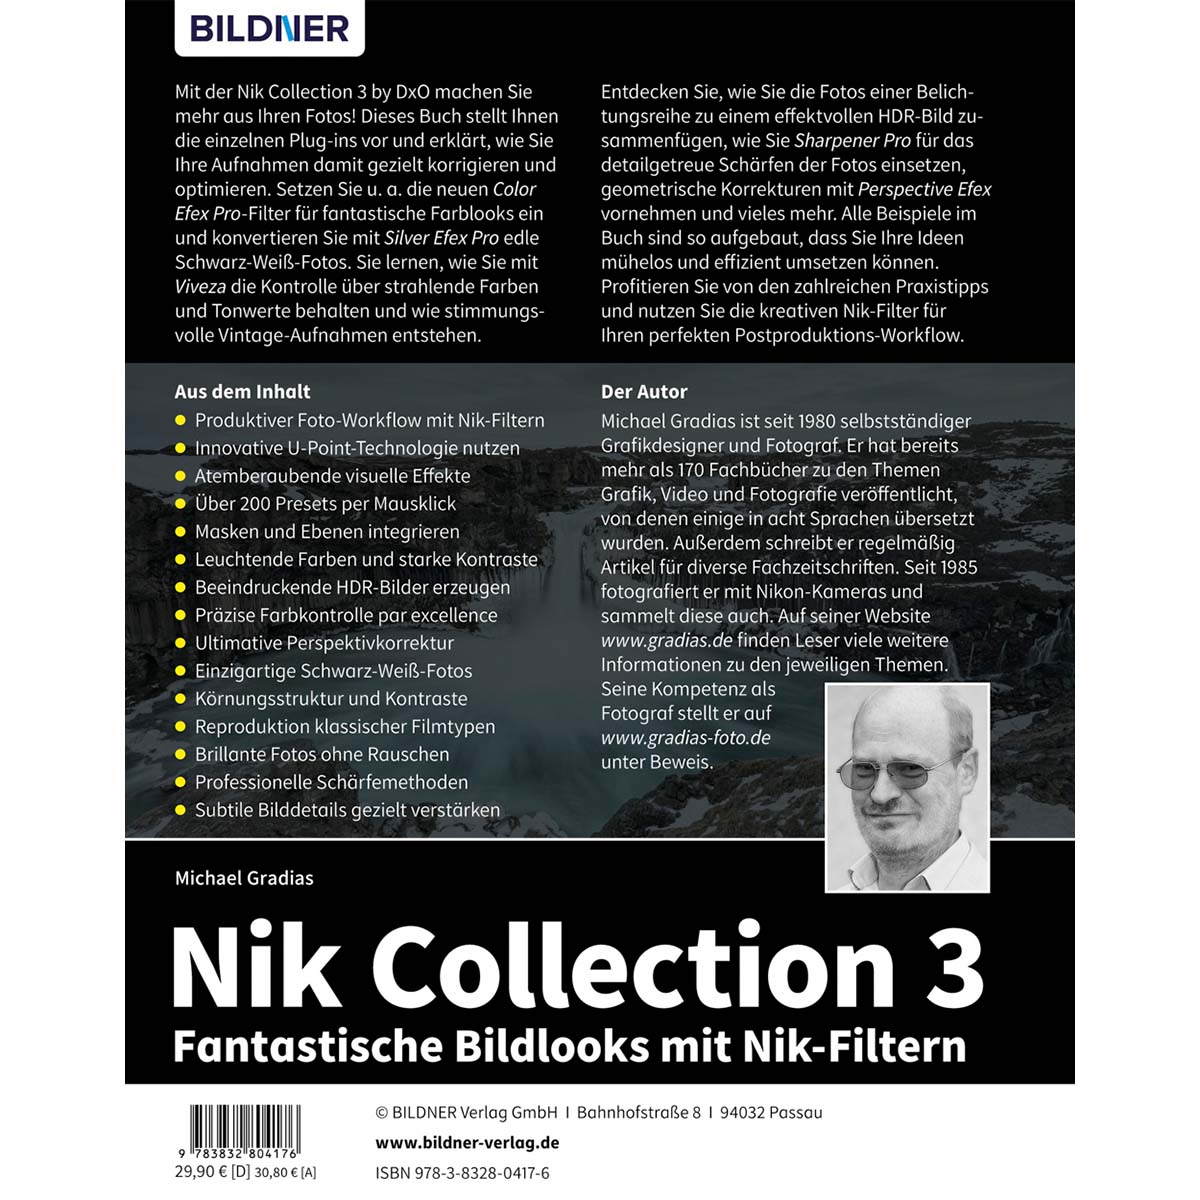 Fantastische - Nik-Filtern Collection Nik mit 3 Bildlooks